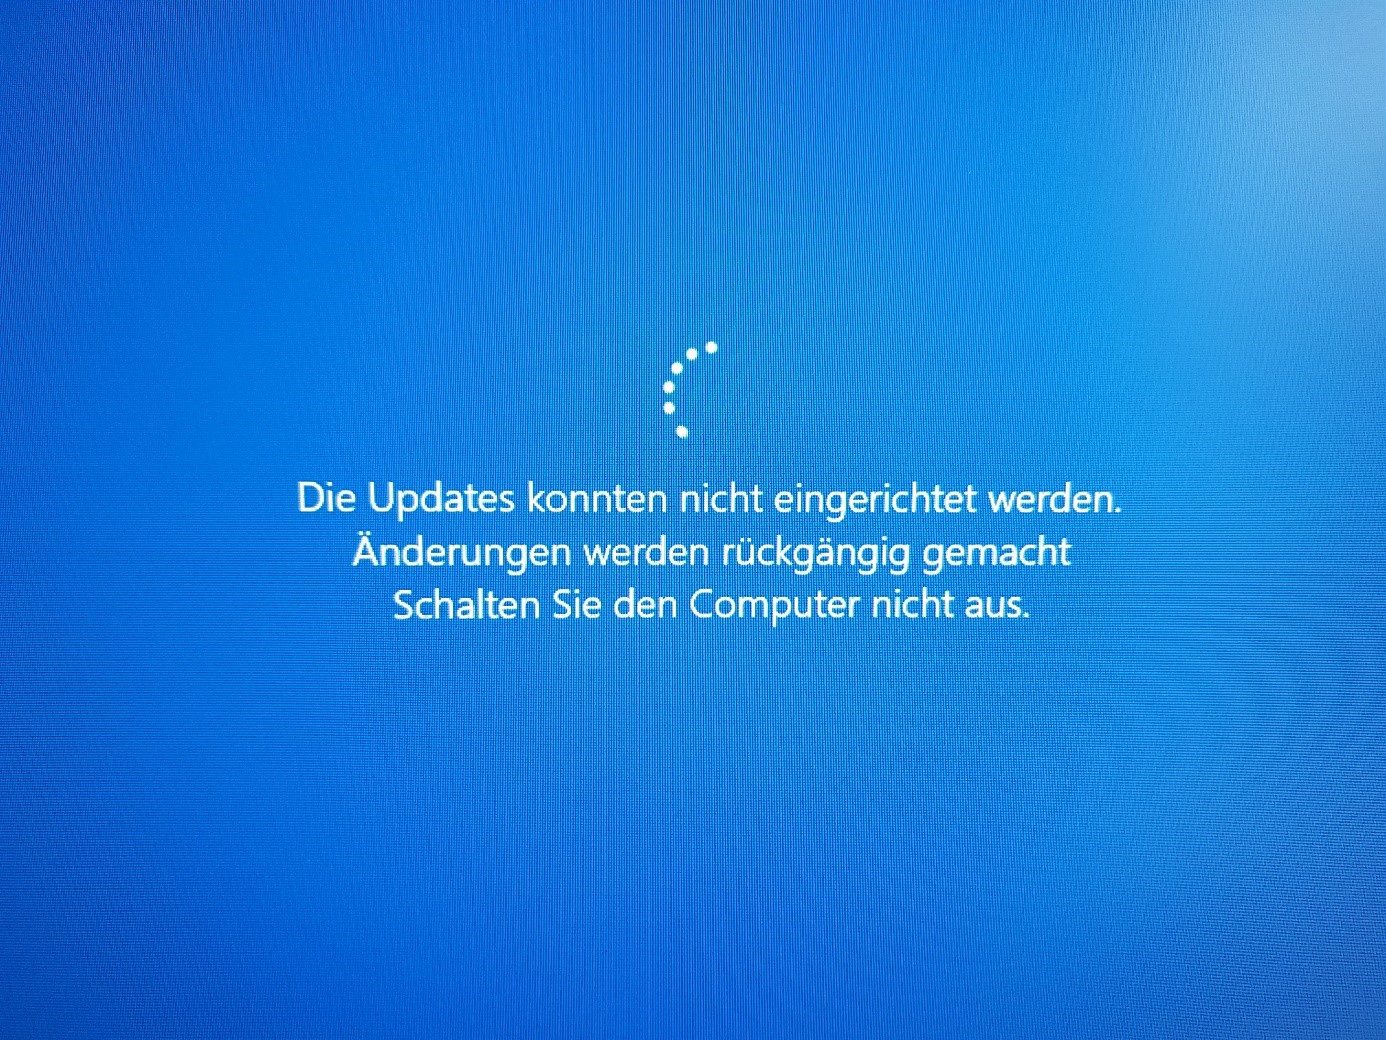 WindowsUpdate kann nicht geamcht werden